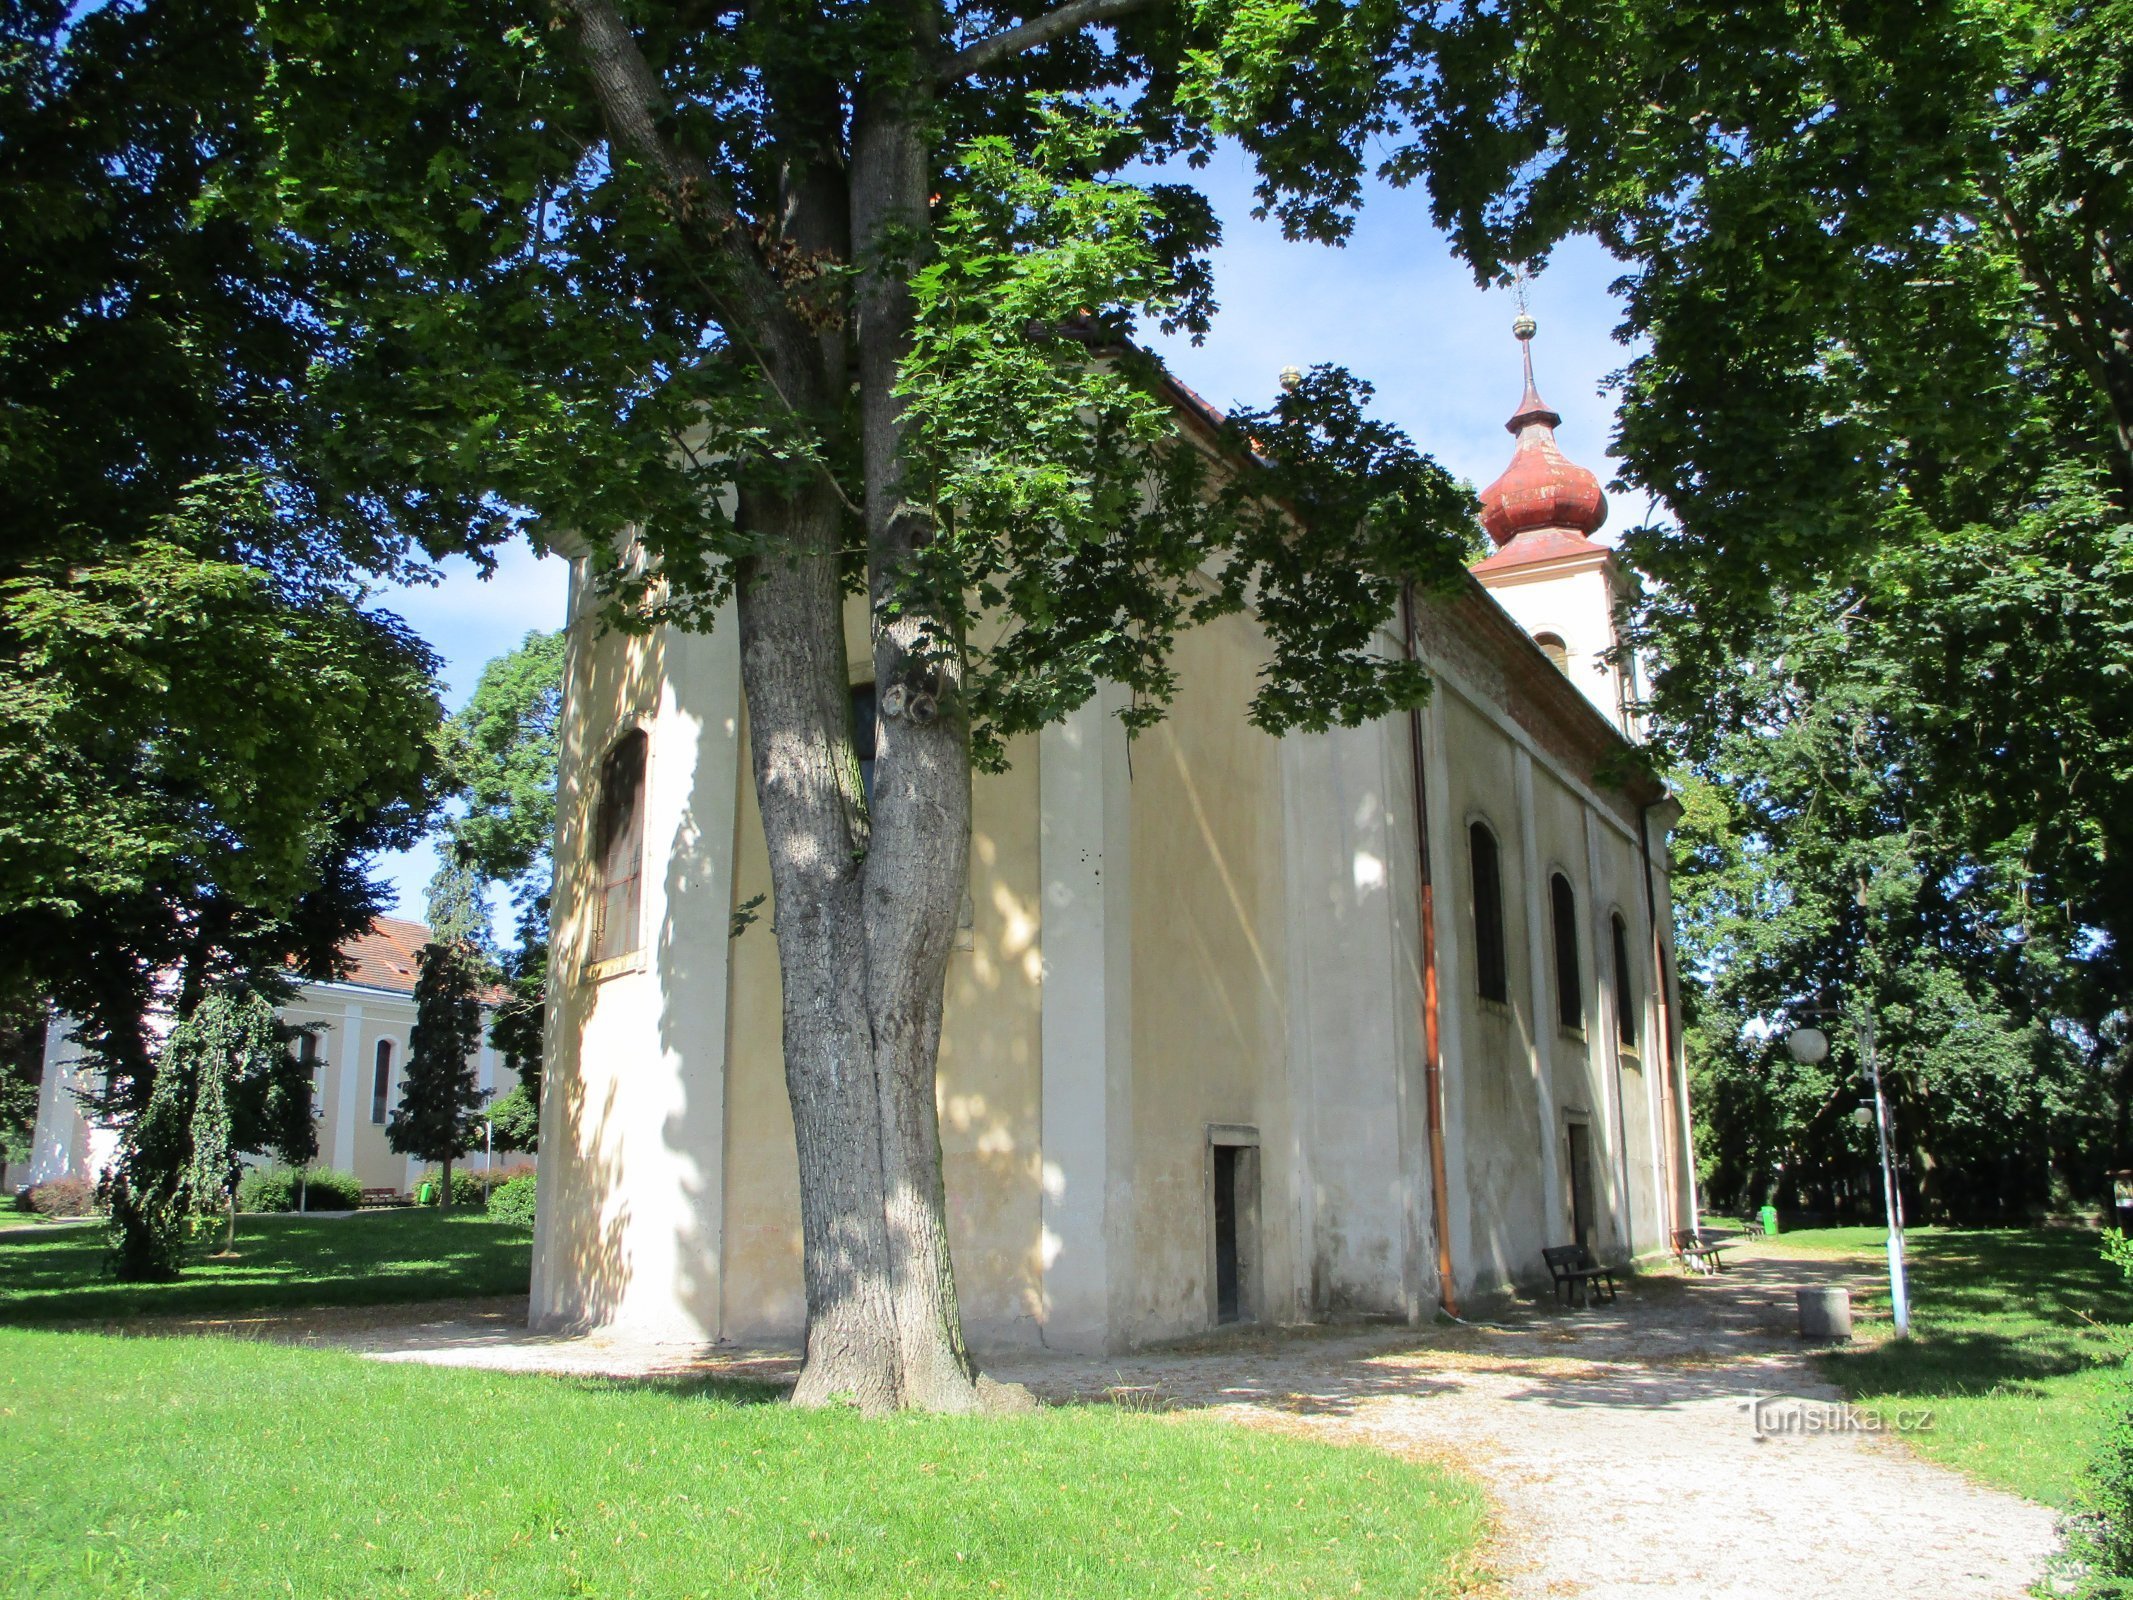 Szentháromság-templom (Nový Bydžov, 5.7.2020. július XNUMX.)